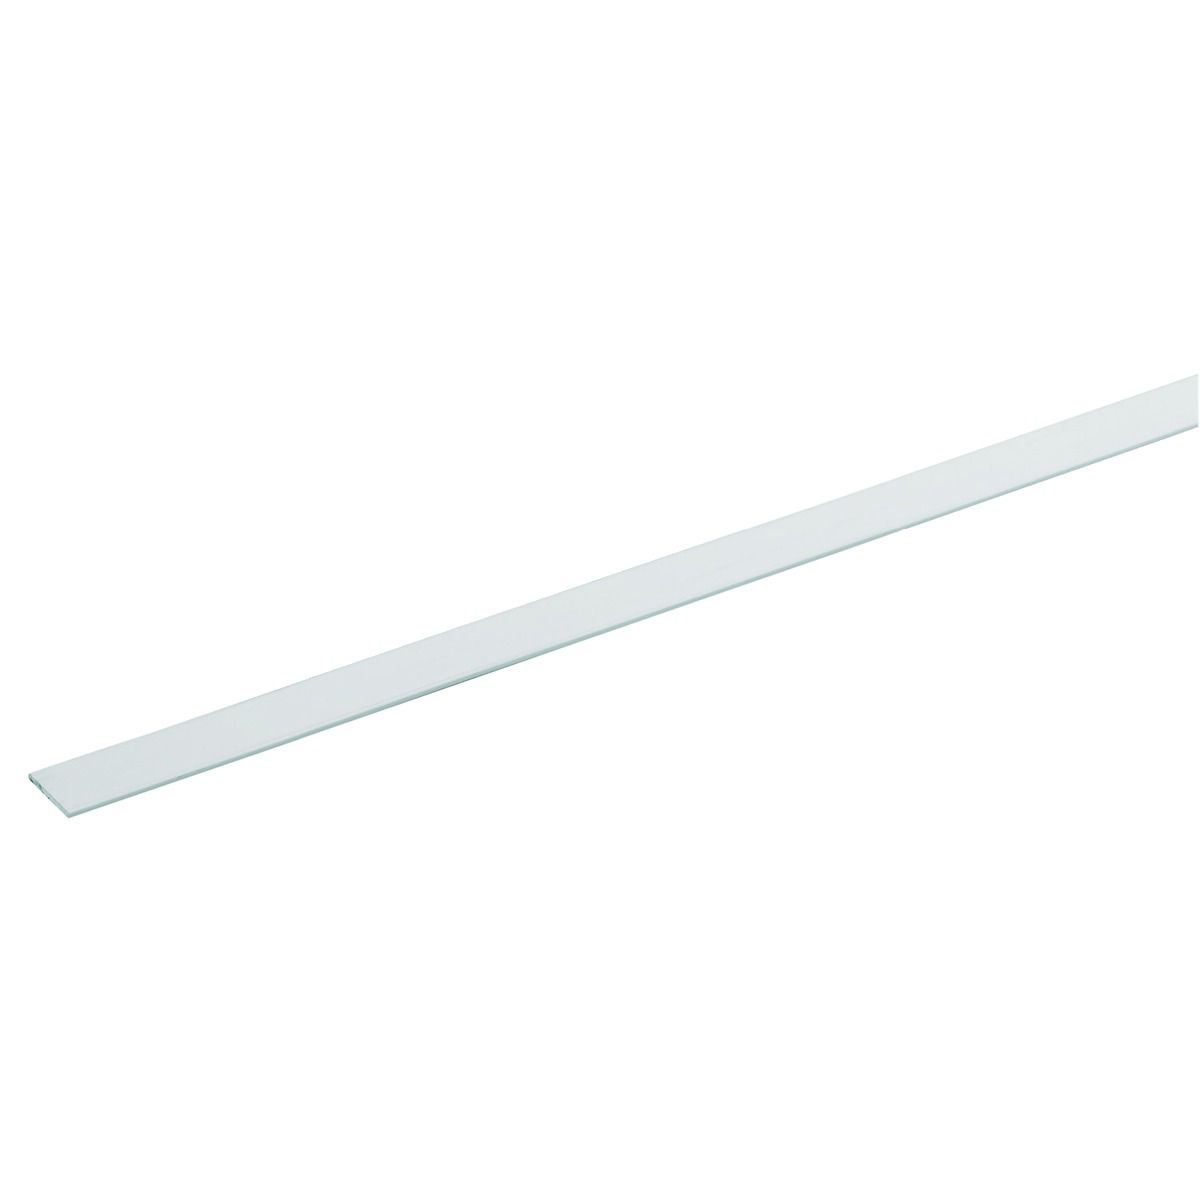 Wickes 19.5mm Multi-Purpose Flat Bar - White PVCu 1m